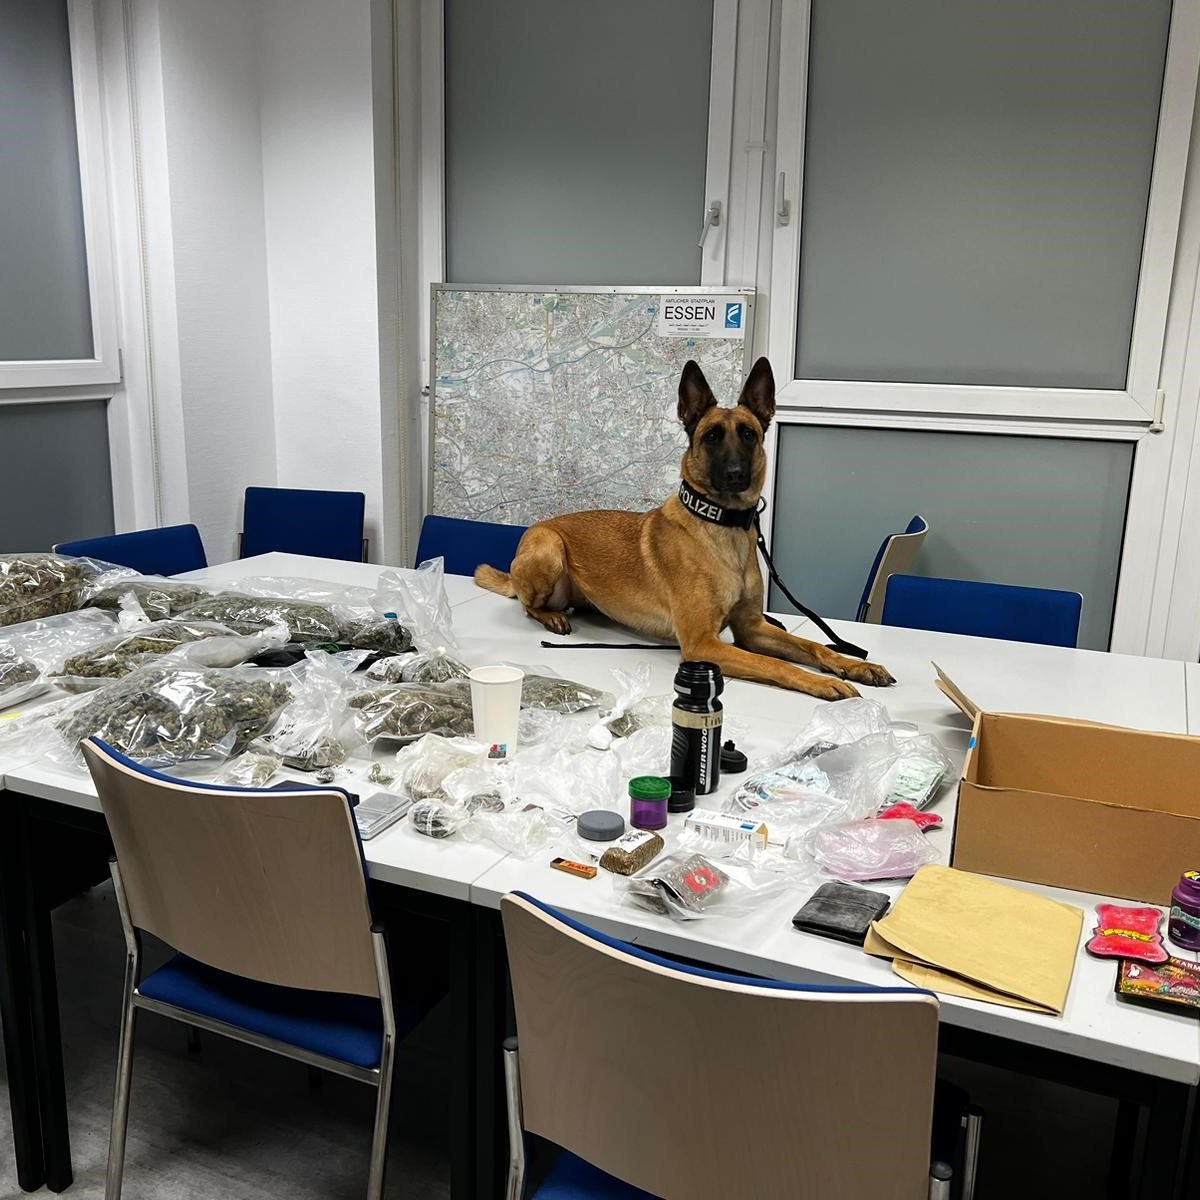 Essen: Polizei-Hund Tilda schlägt zu – Beamten geht dicker Fang ins Netz